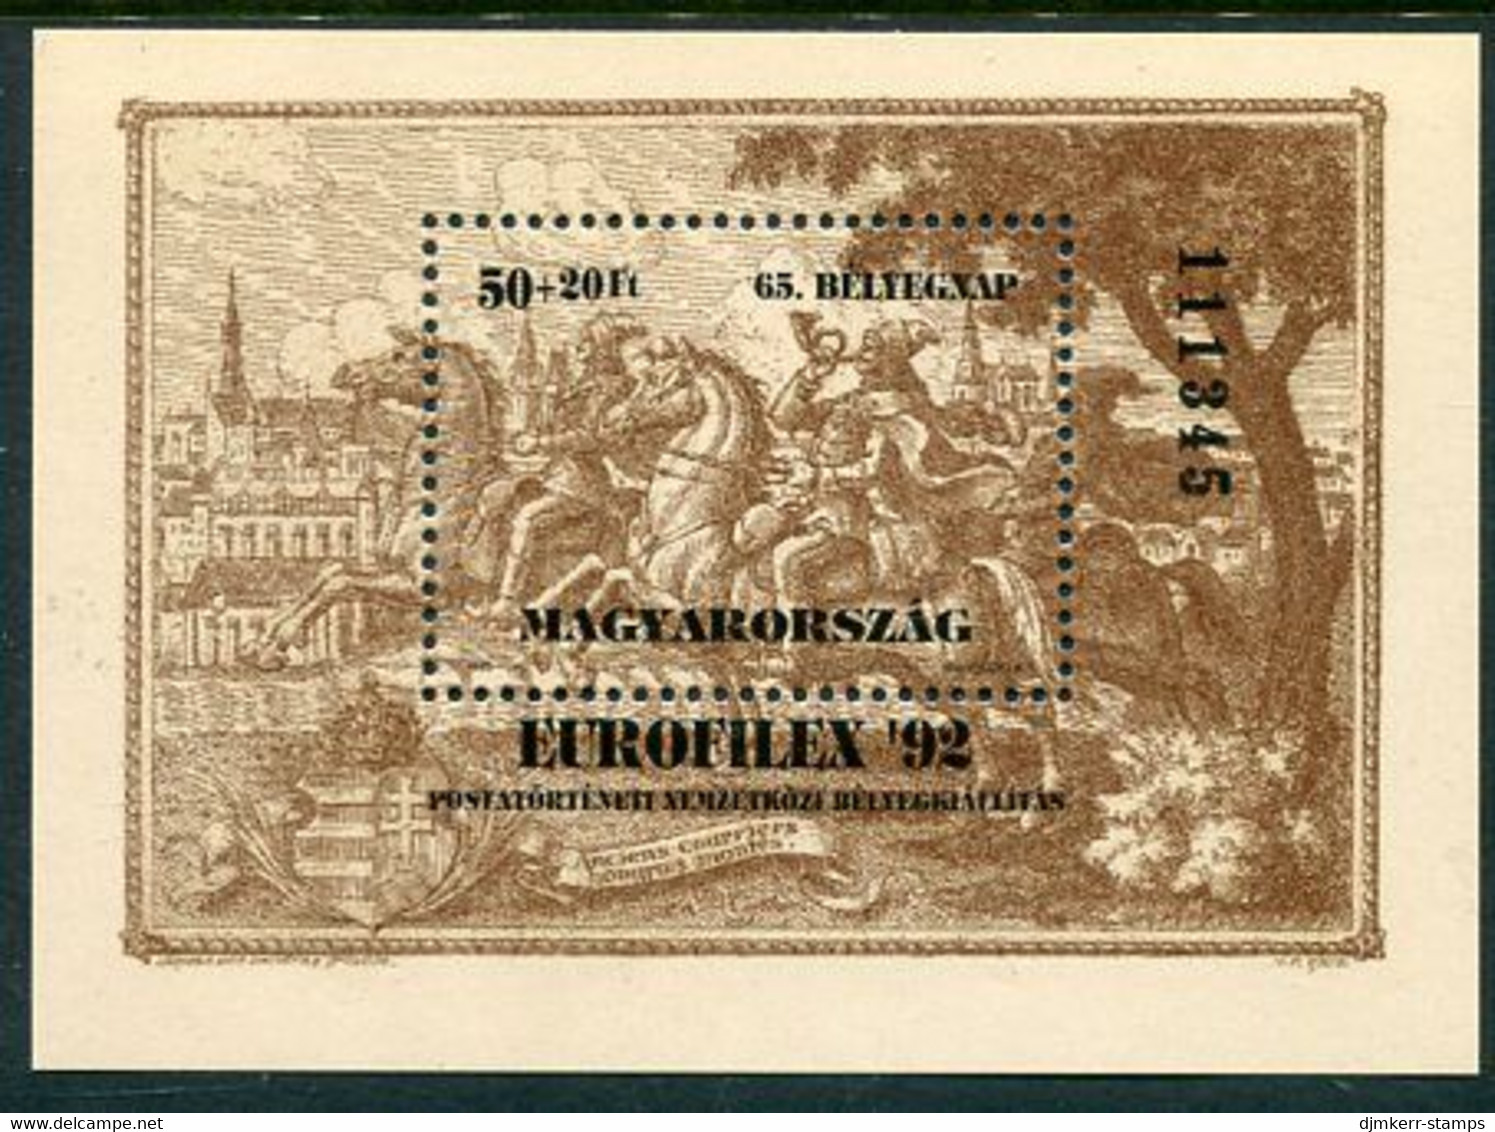 HUNGARY 1992 EUROFILEX Stamp Exhibition Block MNH / **.  Michel Block 221 - Blocchi & Foglietti